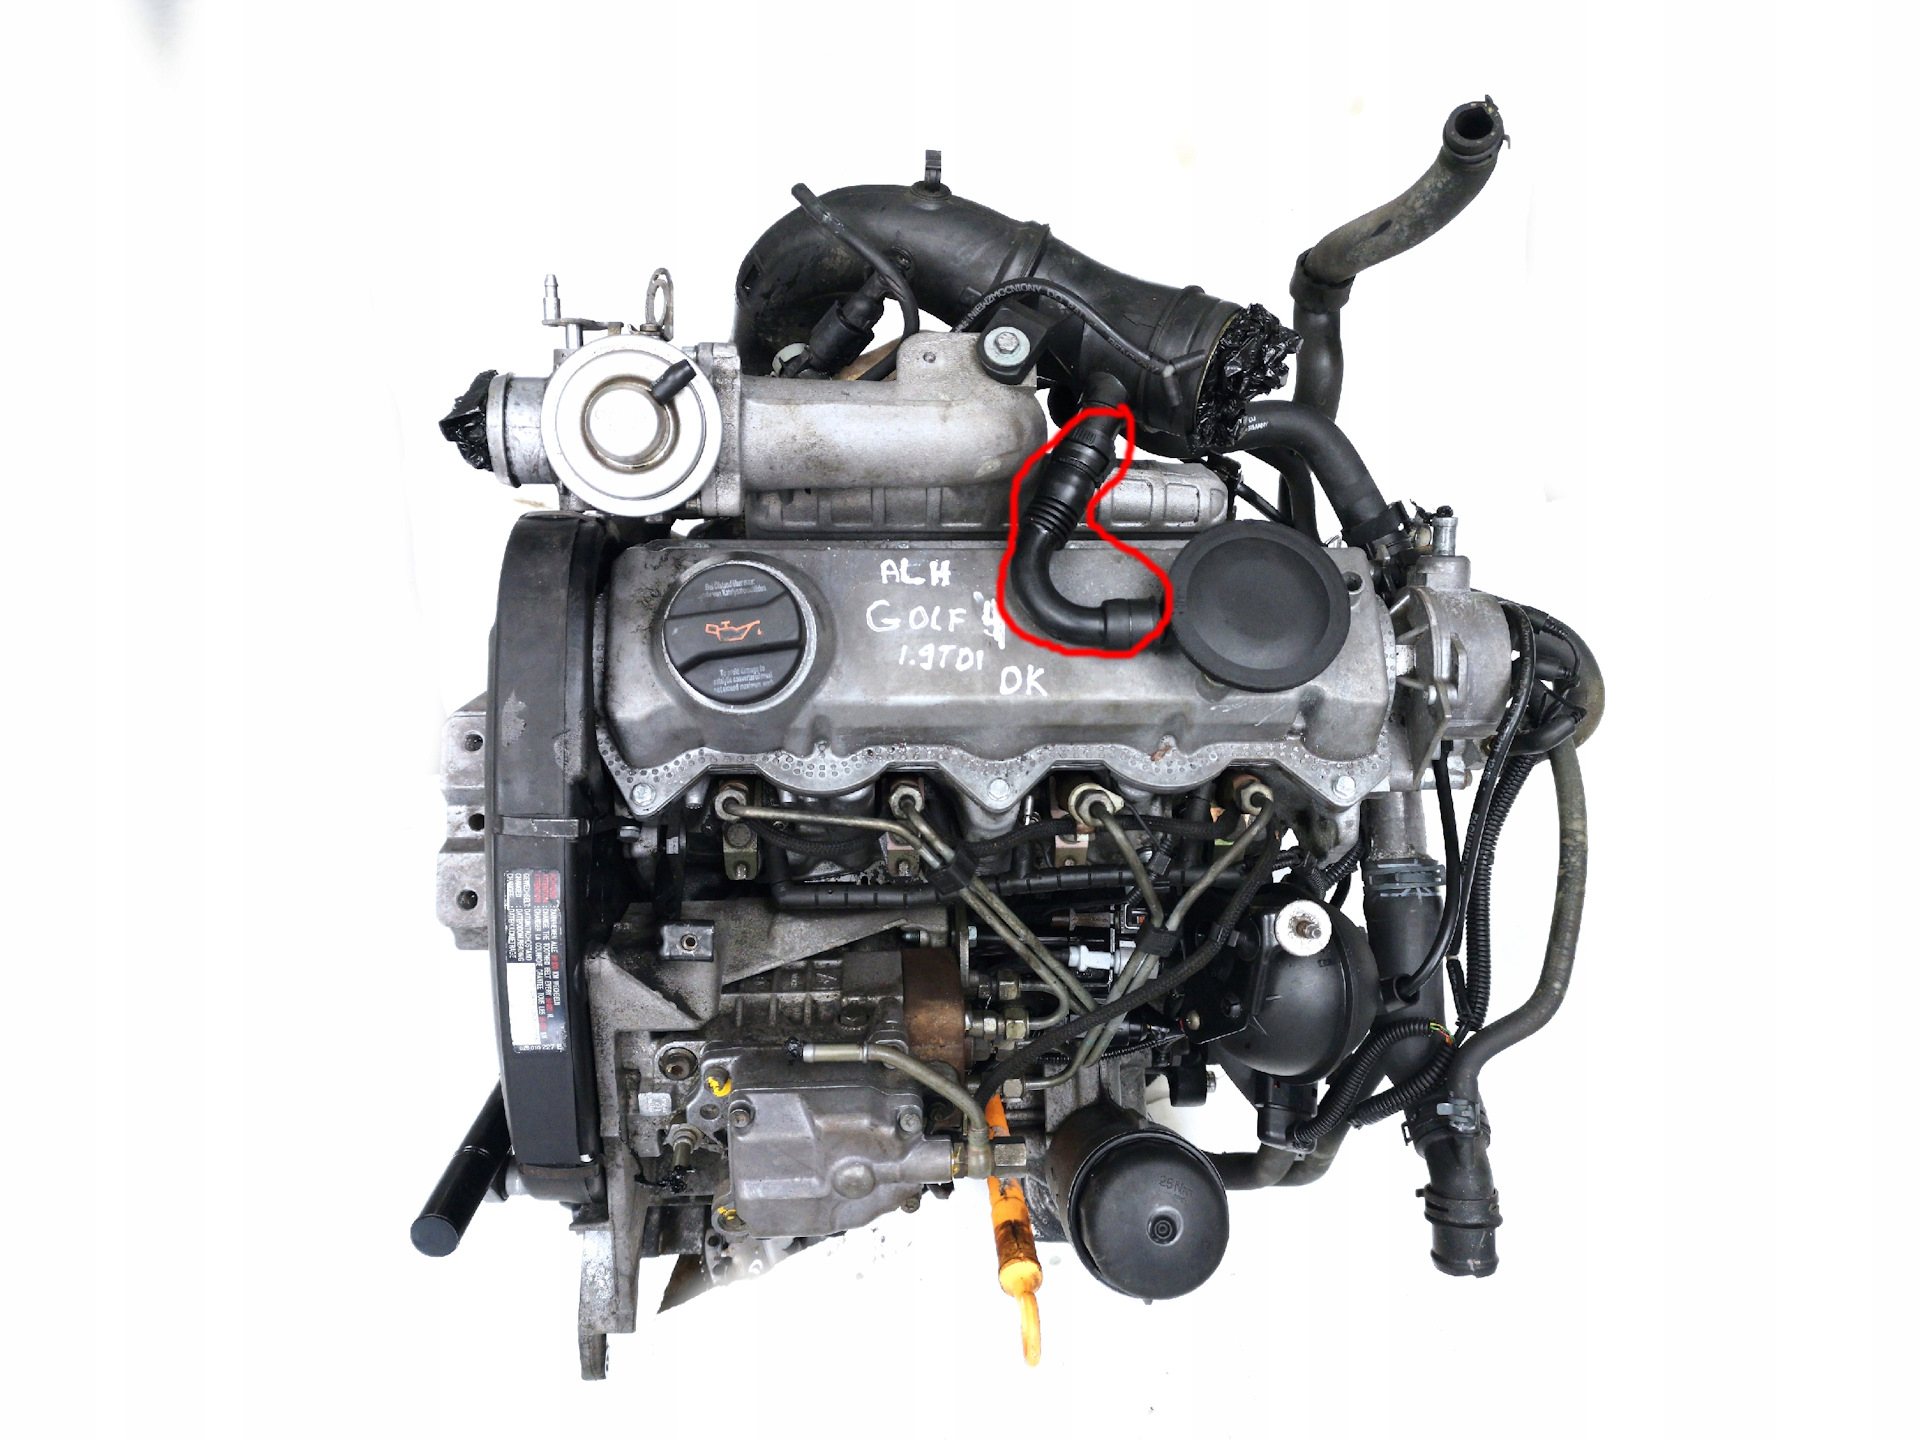 Дизель 1.9 л. Двигатель Фольксваген AGR 1.9 TDI. Фольксваген гольф TDI 1.9. 1.9 TDI Golf мотор. Гольф 4 ALH 1.9 TDI.